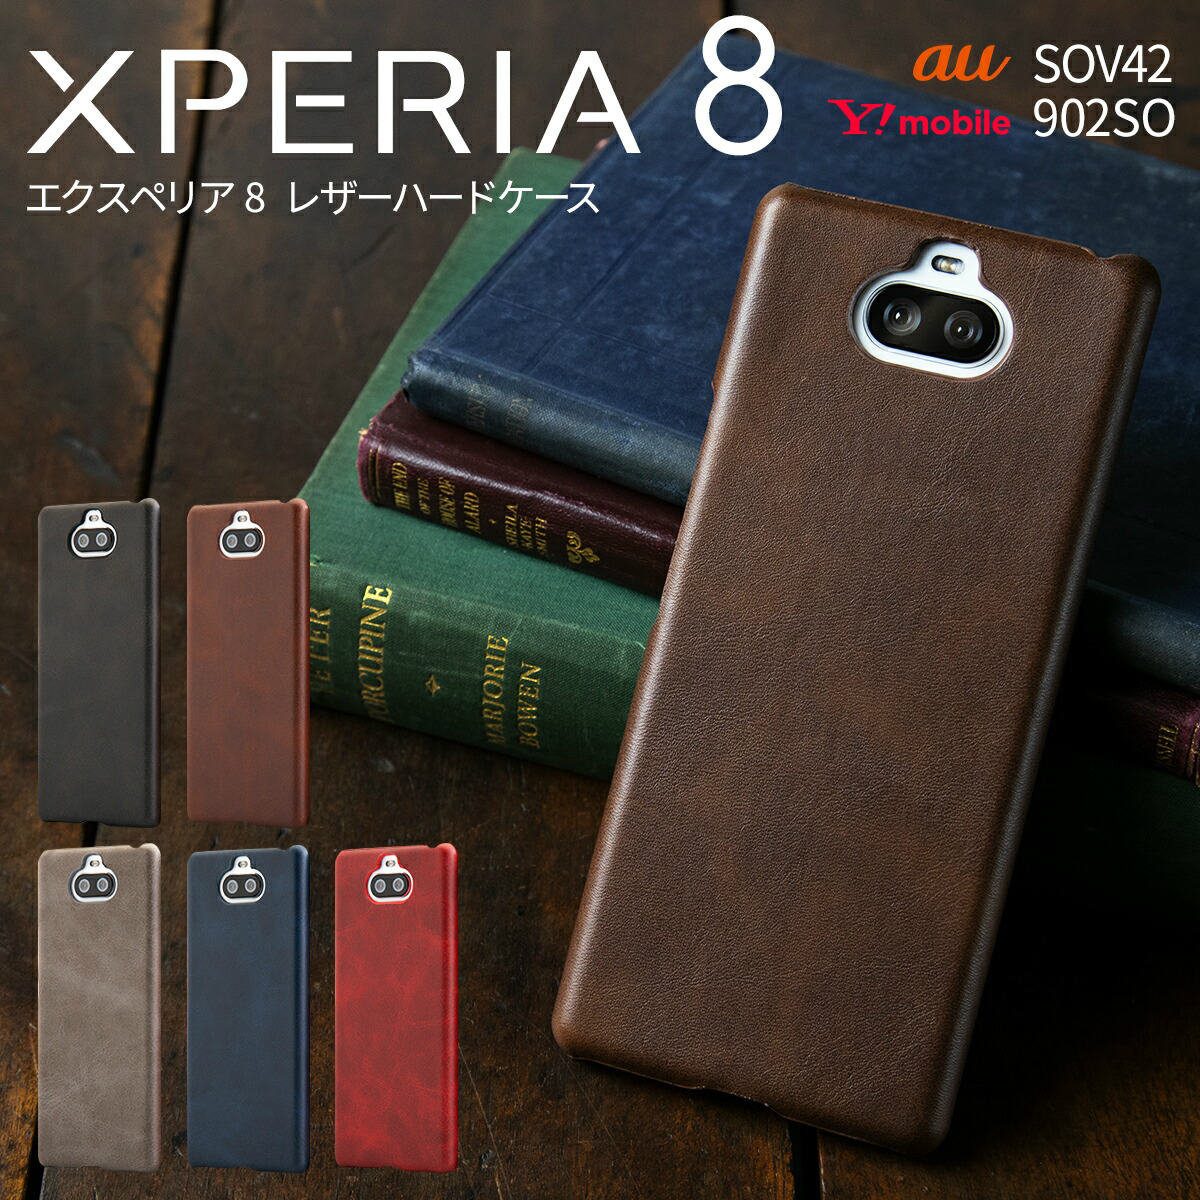  Xperia 8 Xperia 8 lite スマホケース 韓国 SOV42 902SO J3273 スマホ ケース カバー レザーハードケース レザーハードケース8 スマホ ケース カバー スマートフォン 革 かっこいい おしゃれ 人気 おすすめ レザーハードケース sale